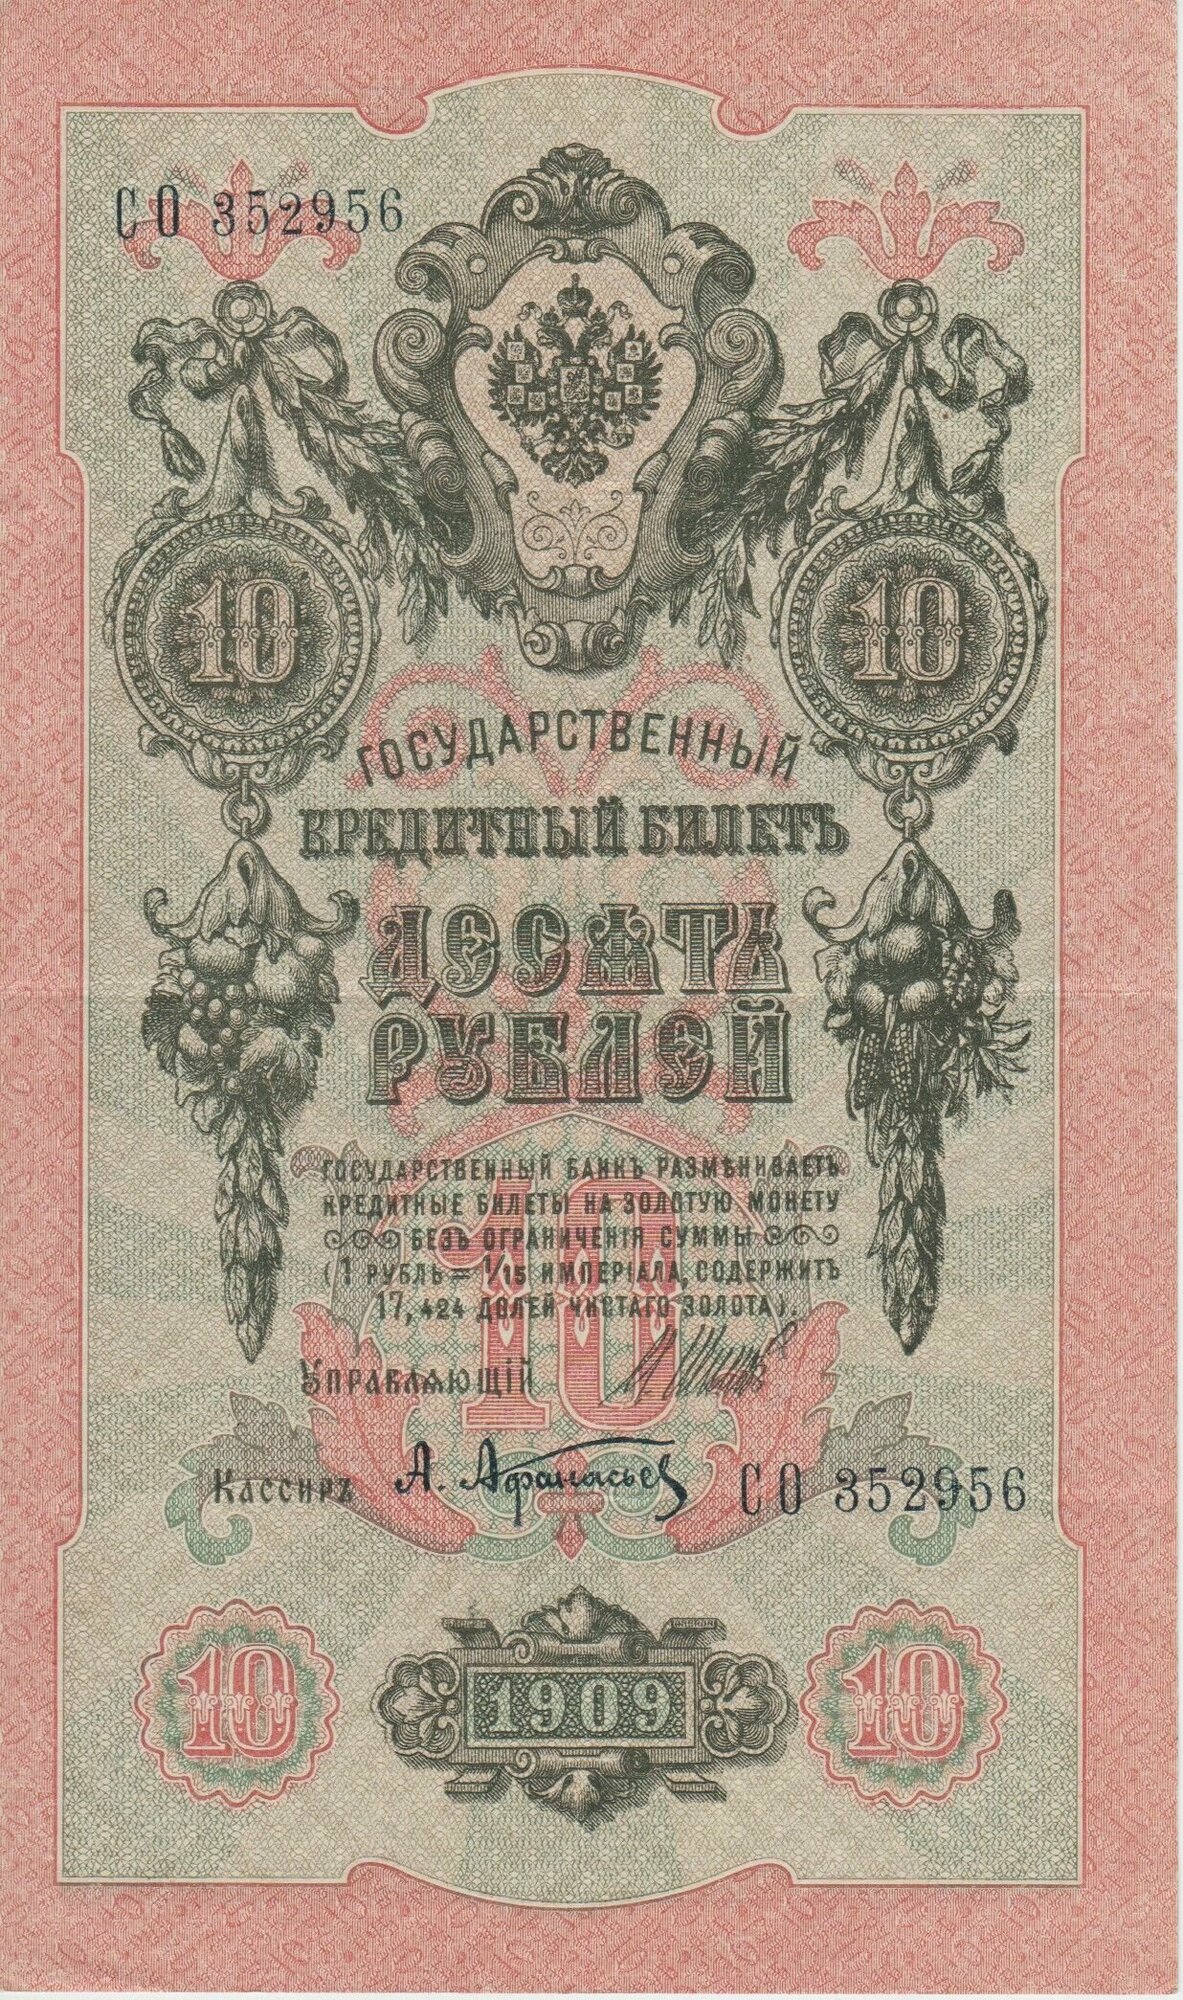 Банкнота России 10 рублей 1909 года Шипов, Афанасьев, длинный номер.